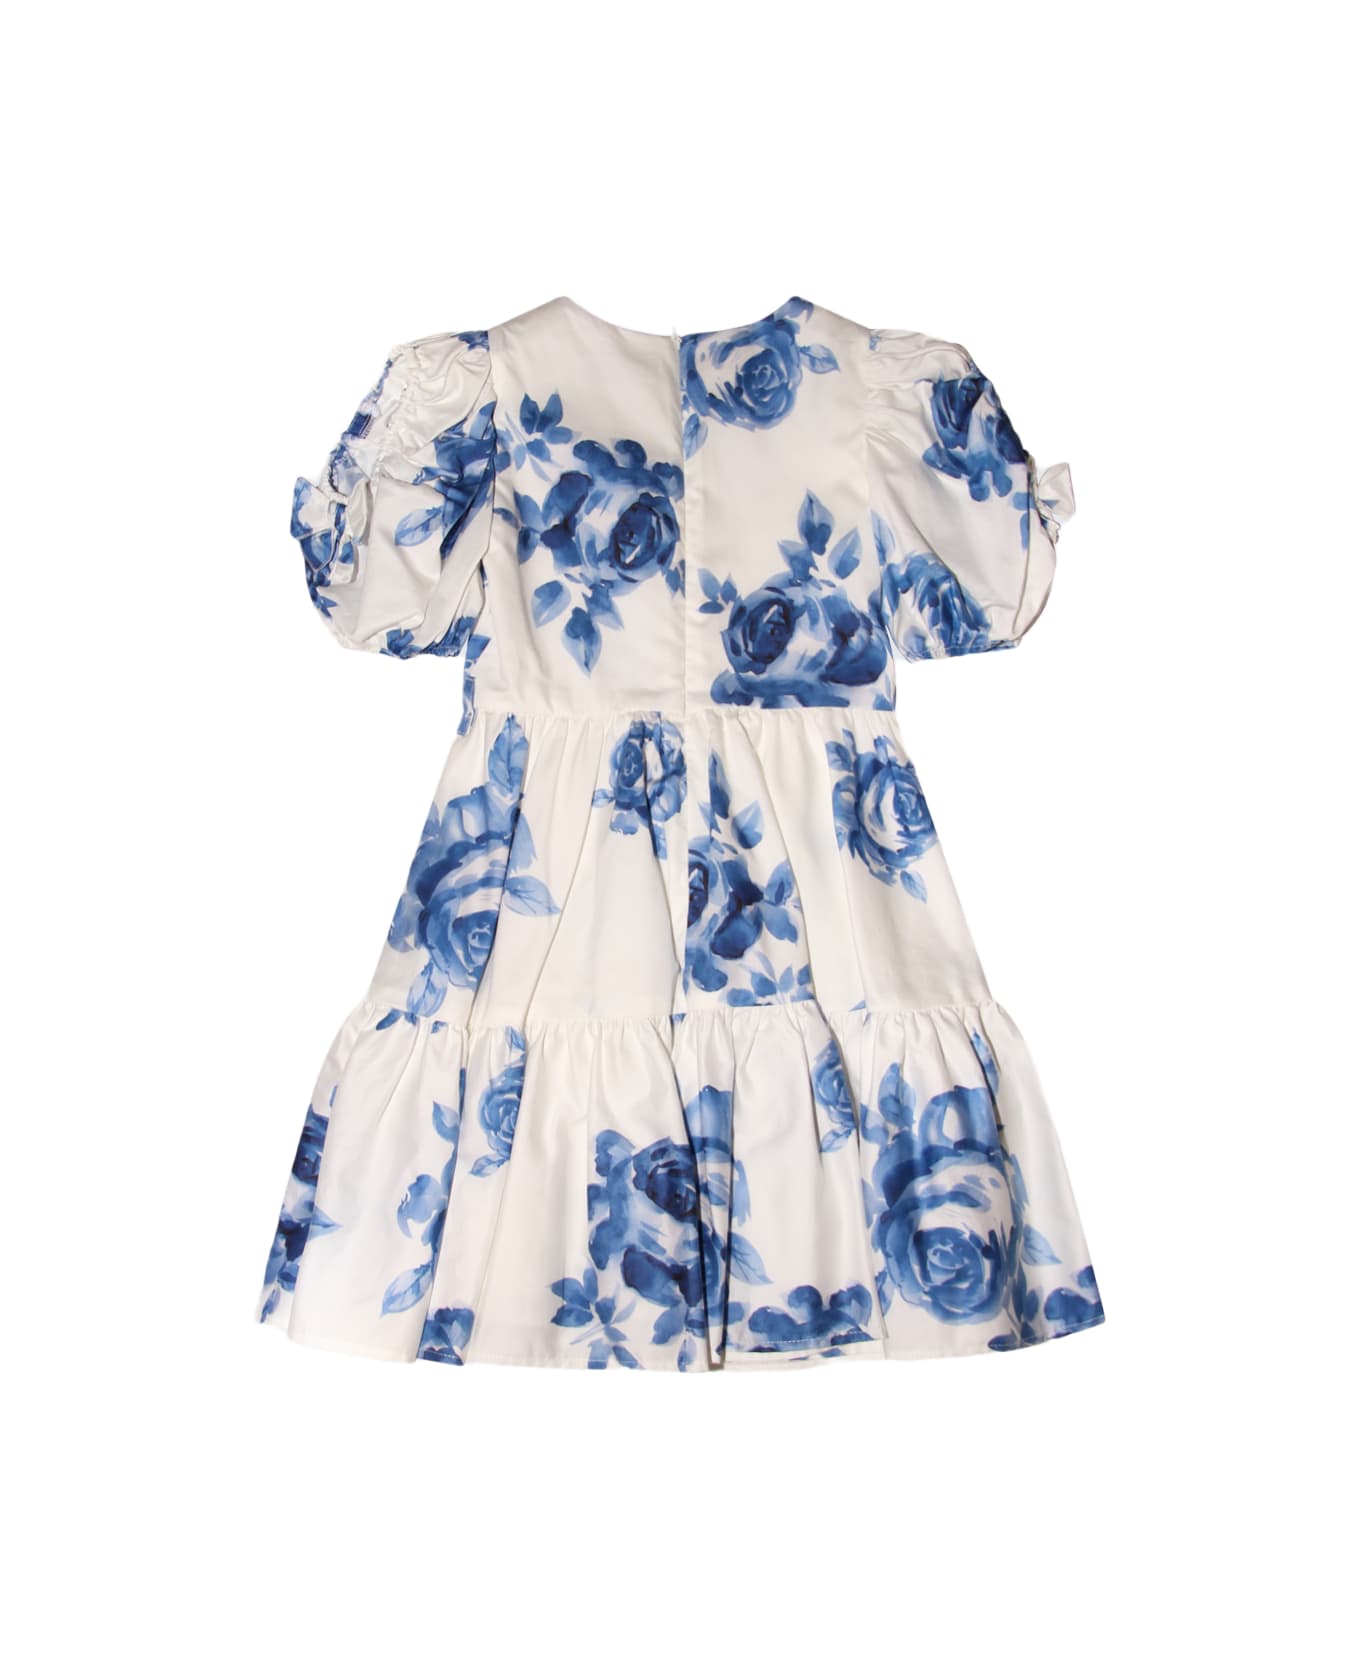 Monnalisa White And Blue Cotton Dress - Panna + blu''